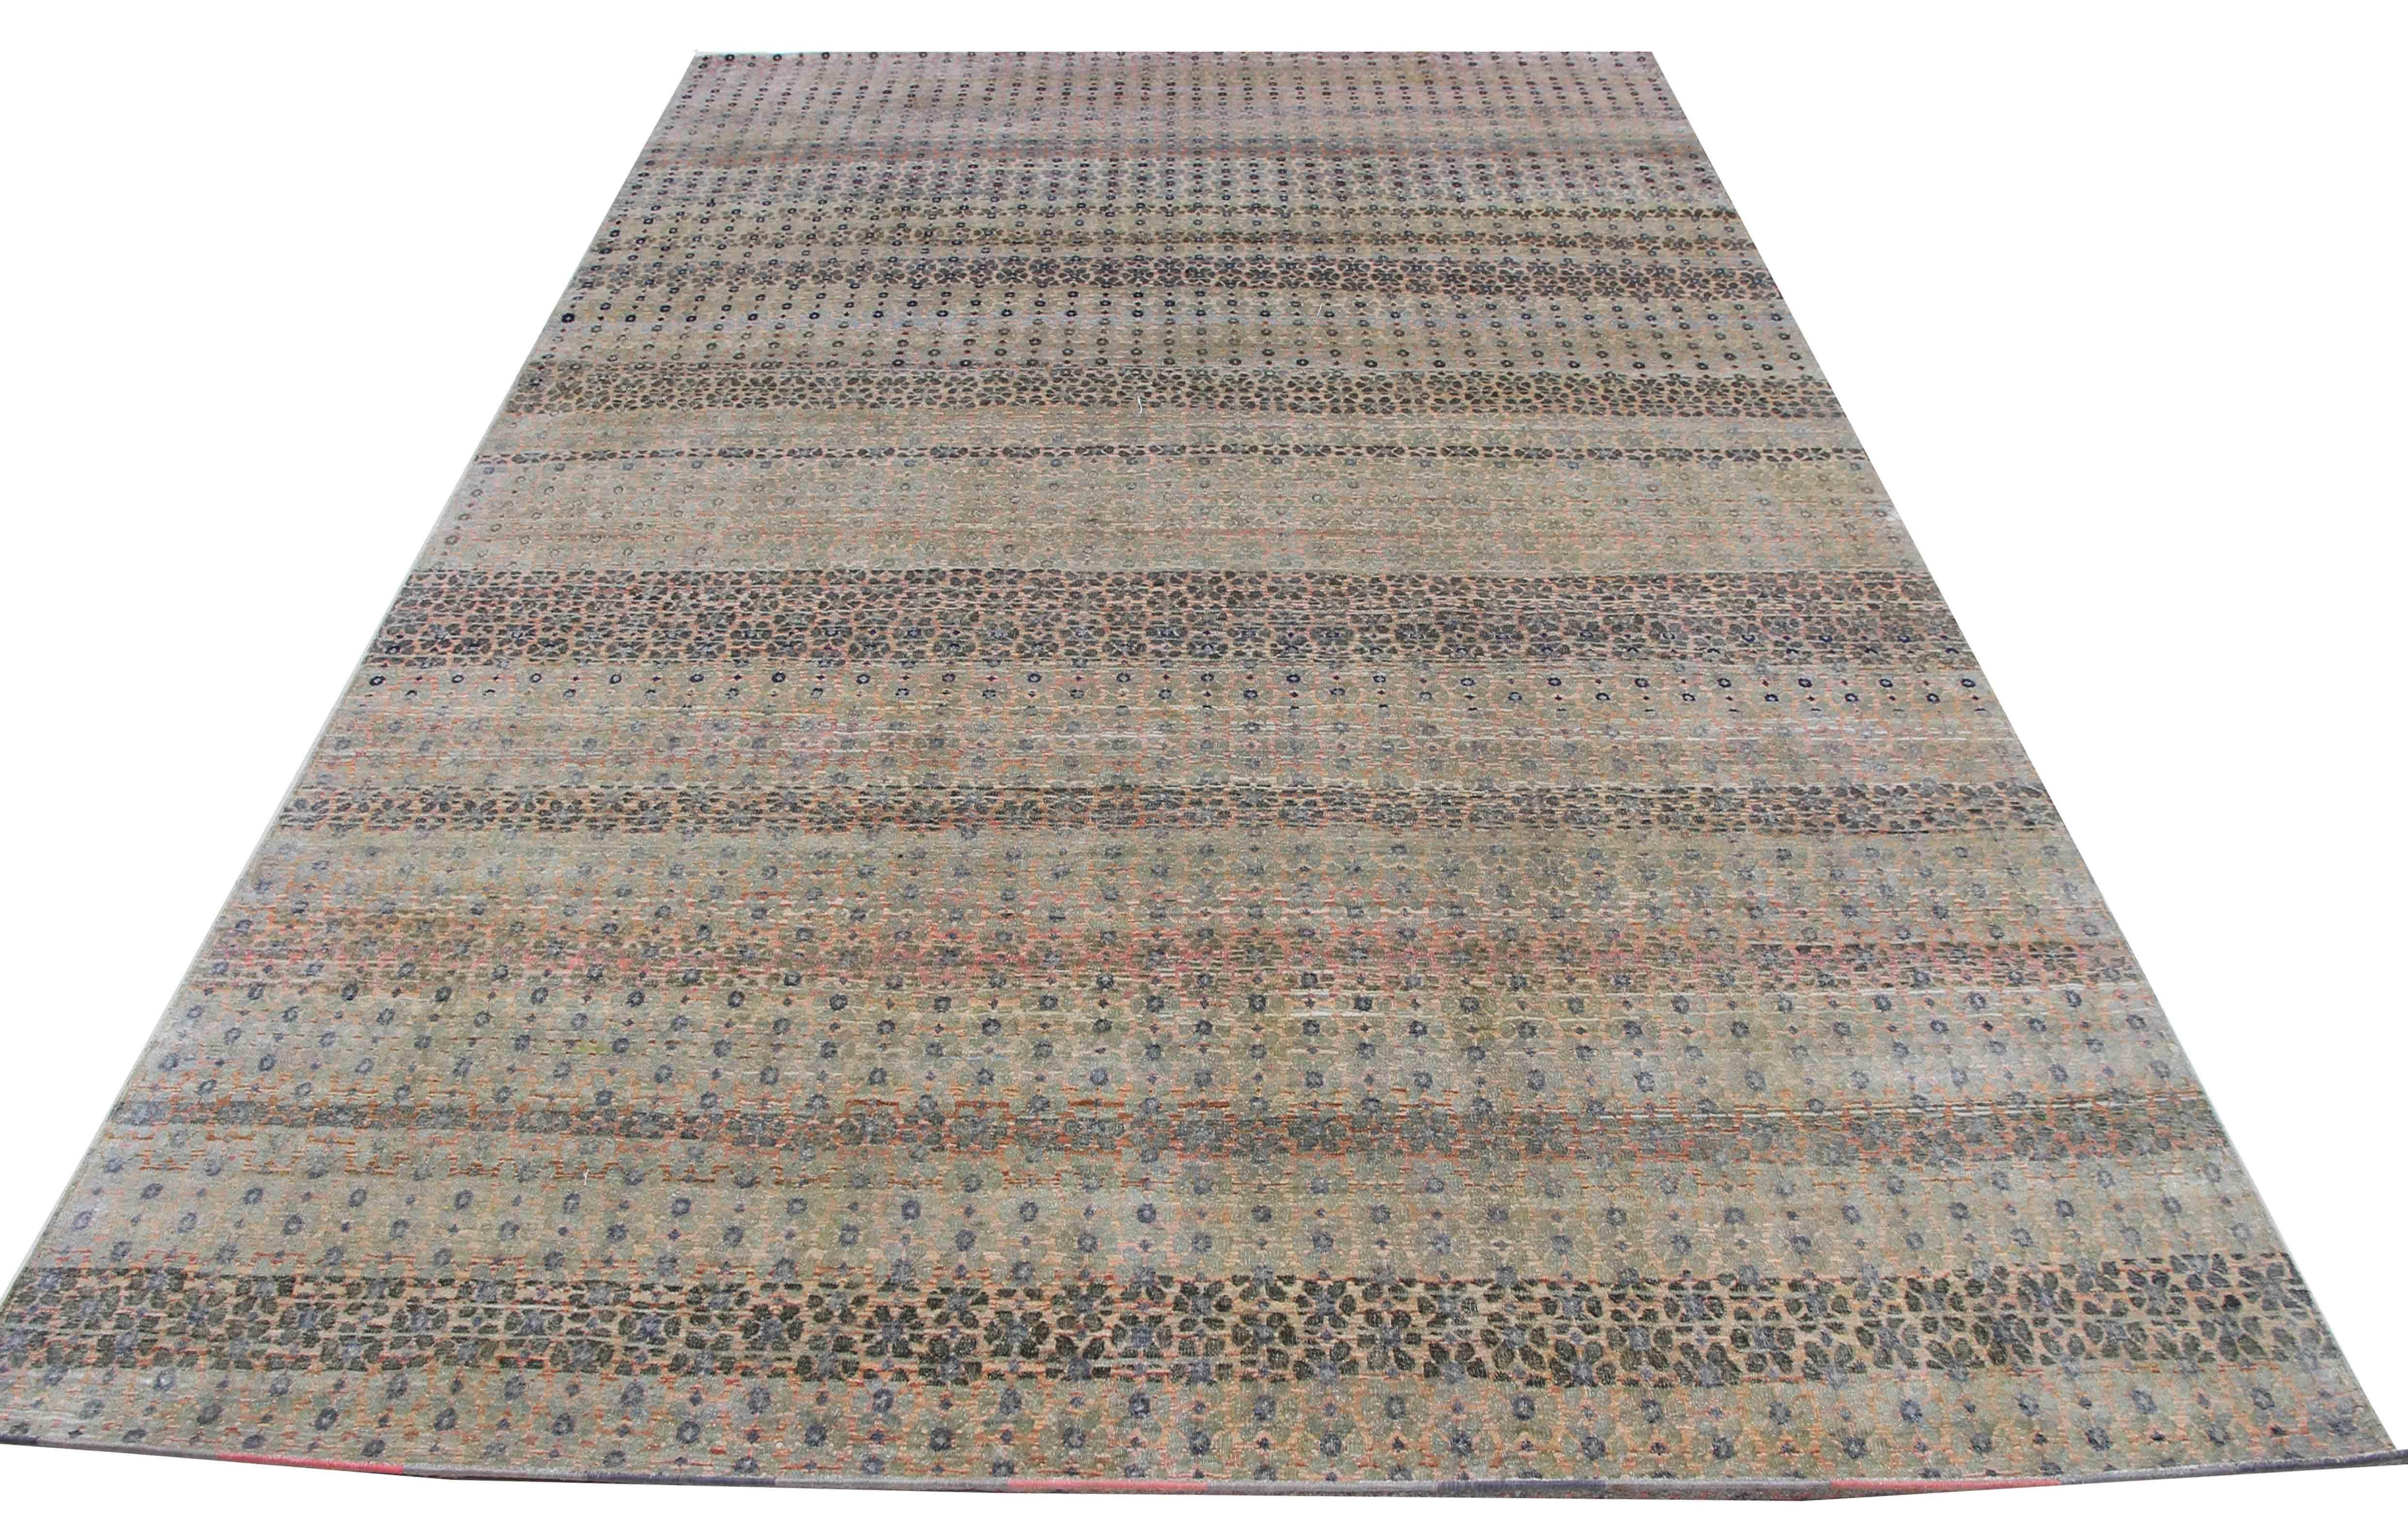 Cada alfombra cuenta una historia única. Esta alfombra de seda está inspirada en elementos de nuestro mundo. Cuando se coloca junto a un elemento de lo antiguo y se mezcla con un elemento de lo nuevo, es la narración de la historia actual en una